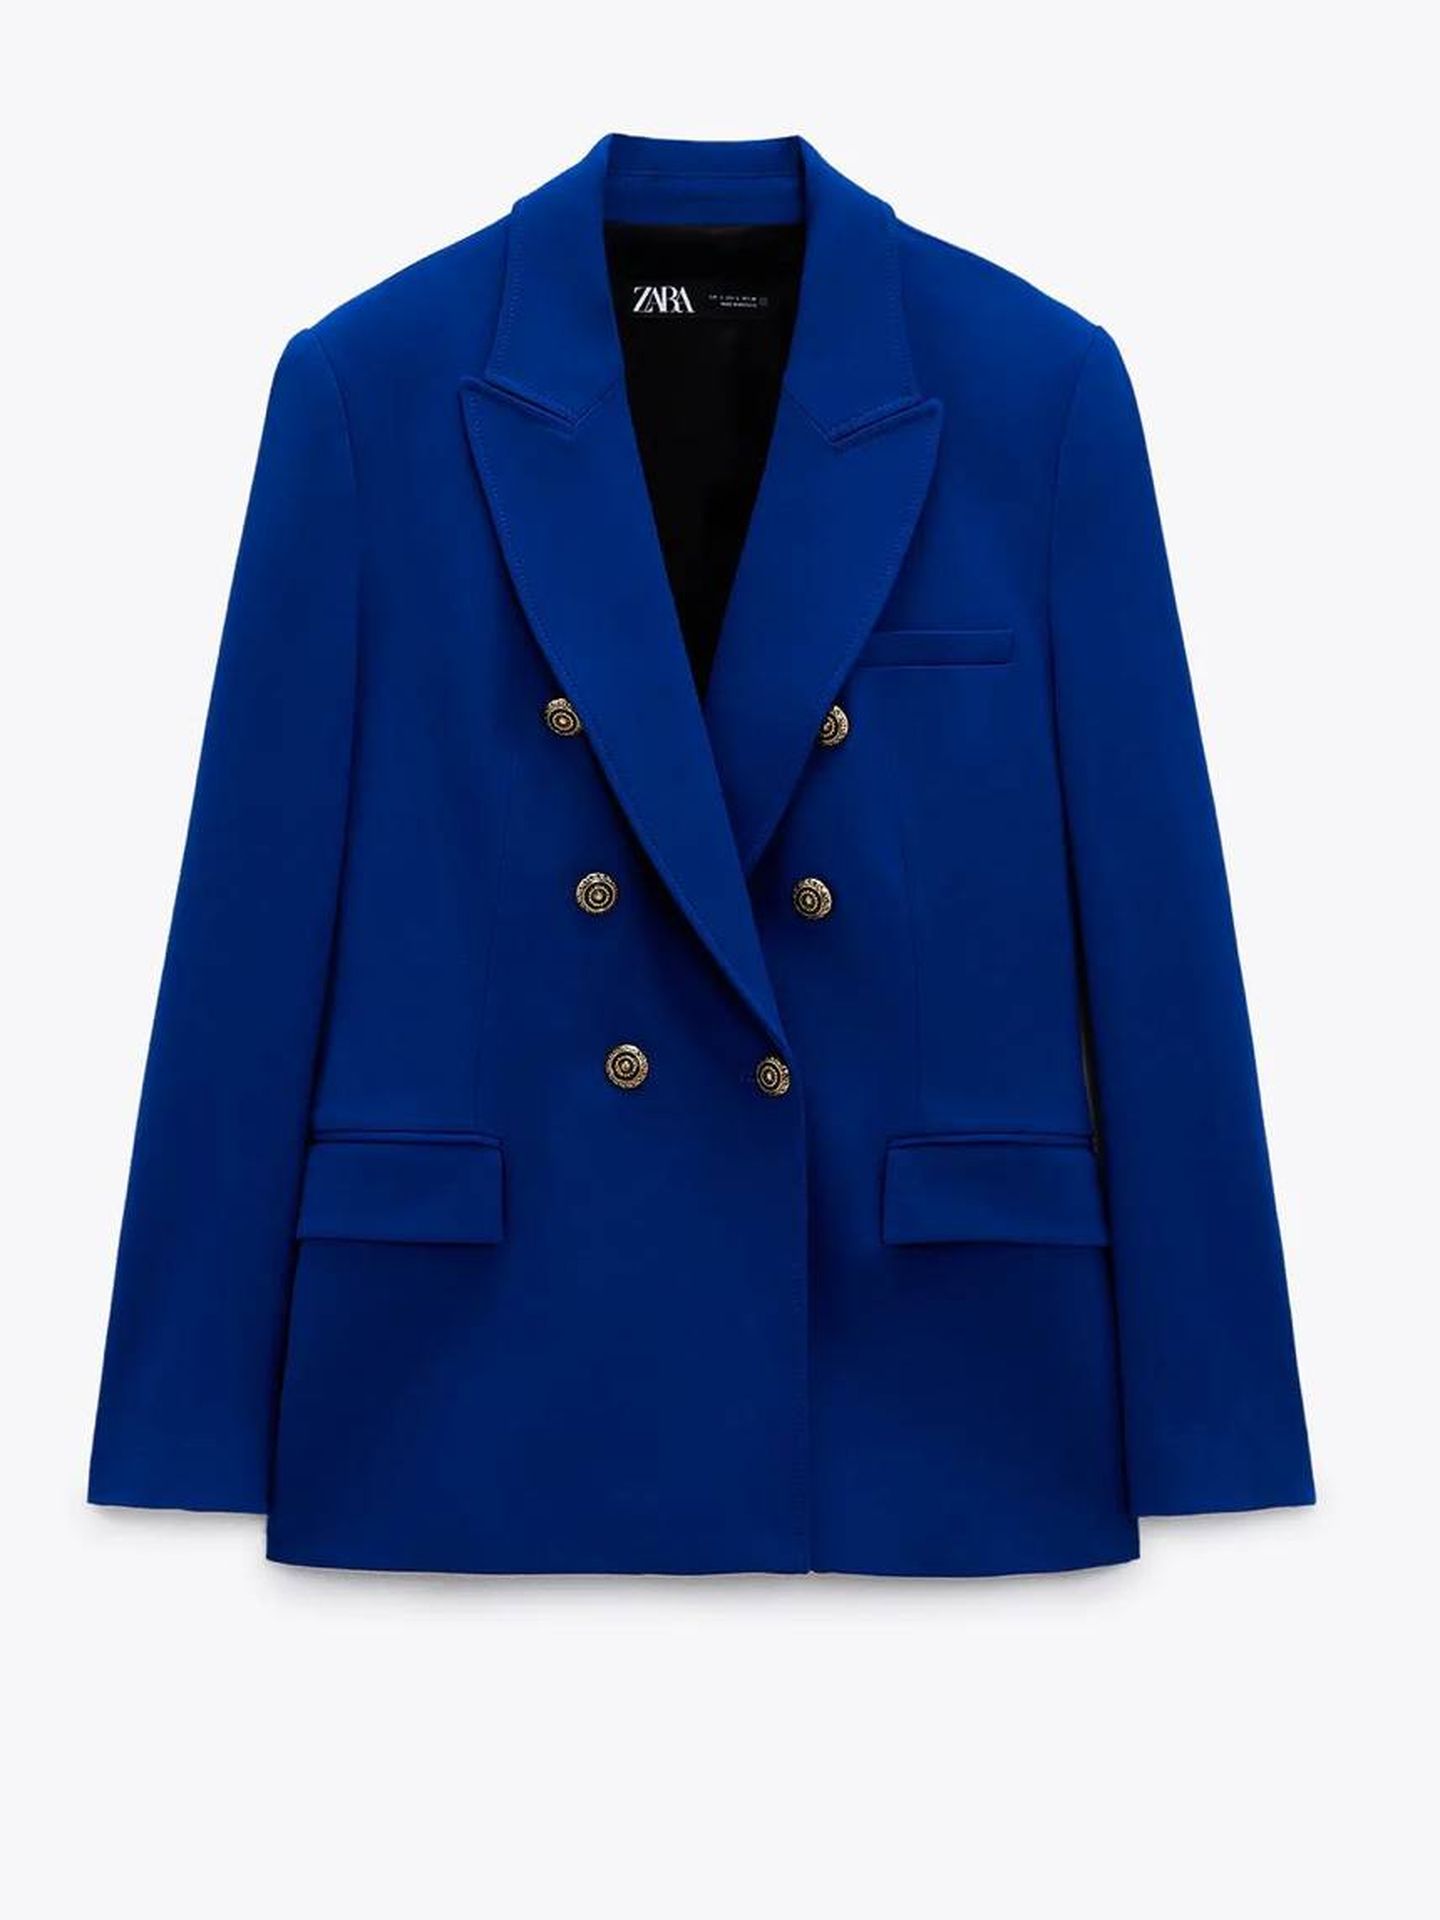 La chaqueta de Zara de Kate Middleton.  